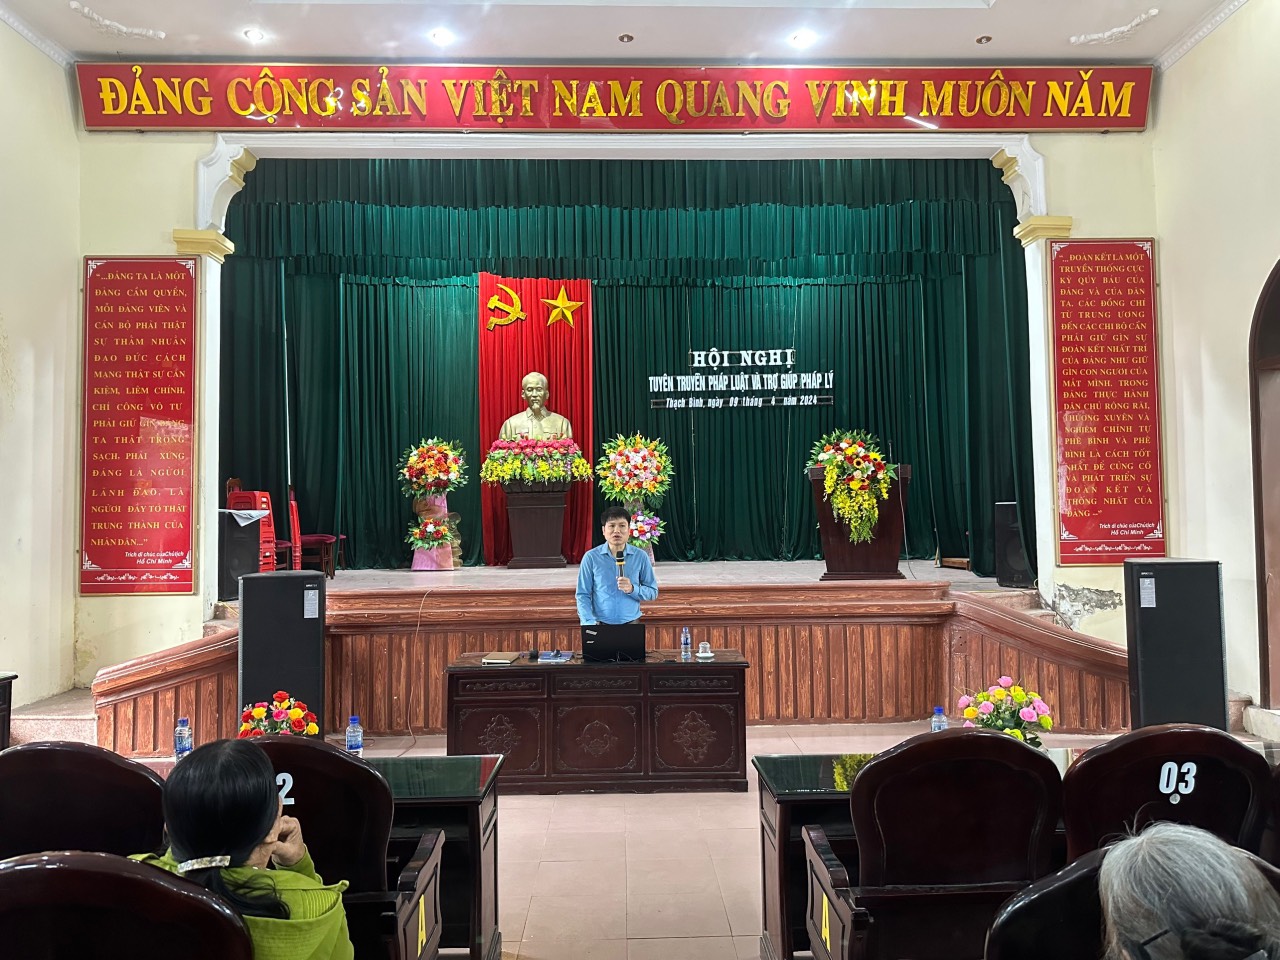 Hội nghị tuyên truyền pháp luật và trợ giúp pháp lý (TGPL) cho người dân vùng đồng bào dân tộc thiểu số và miền núi trên địa bàn huyện Nho Quan